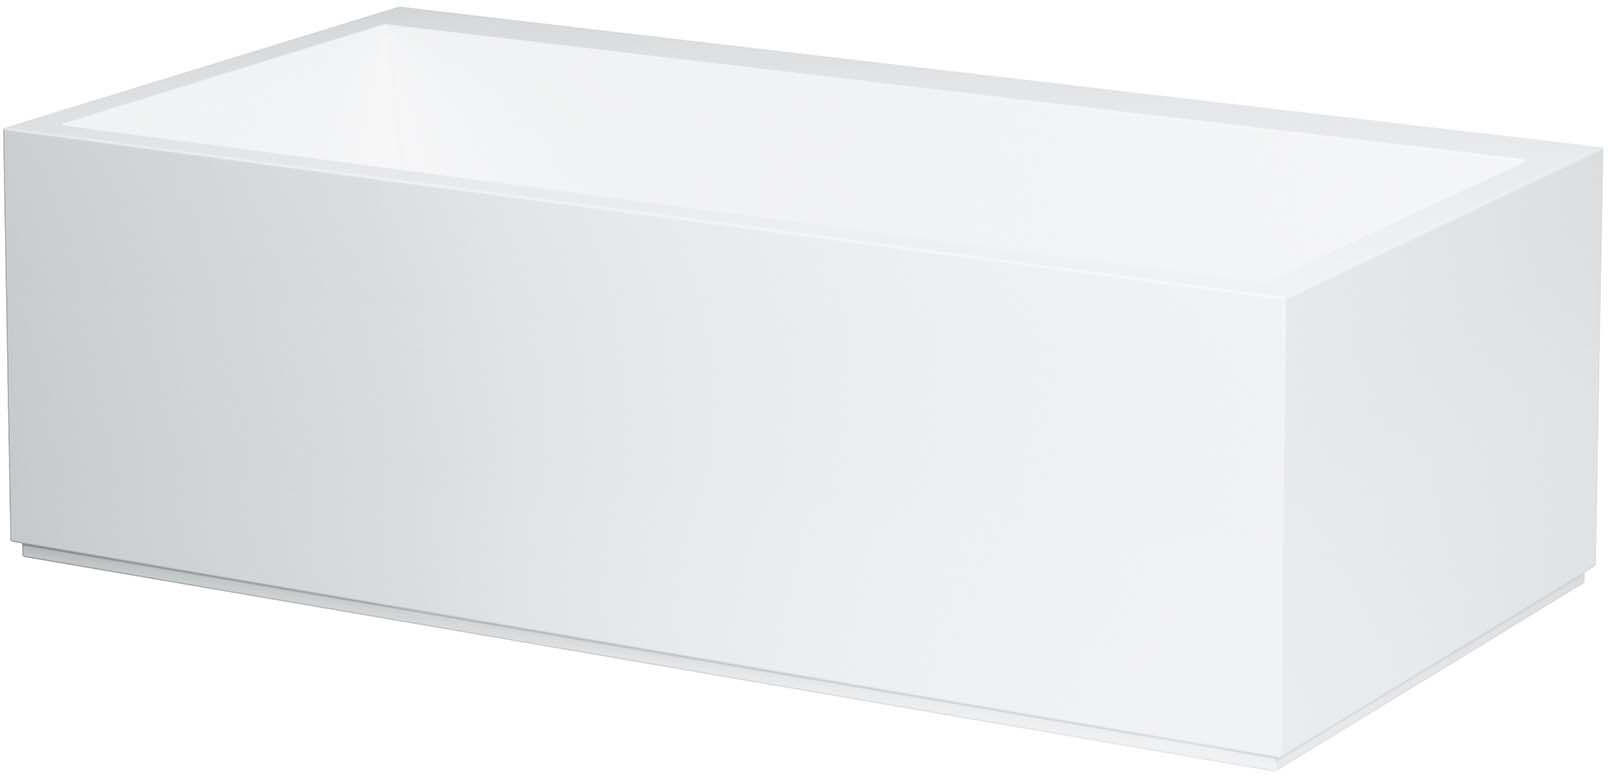 LAUFEN Kartell Freistehbadewanne H2243320006161 170 x 86 cm, mit LED-Beleuchtung, weiß